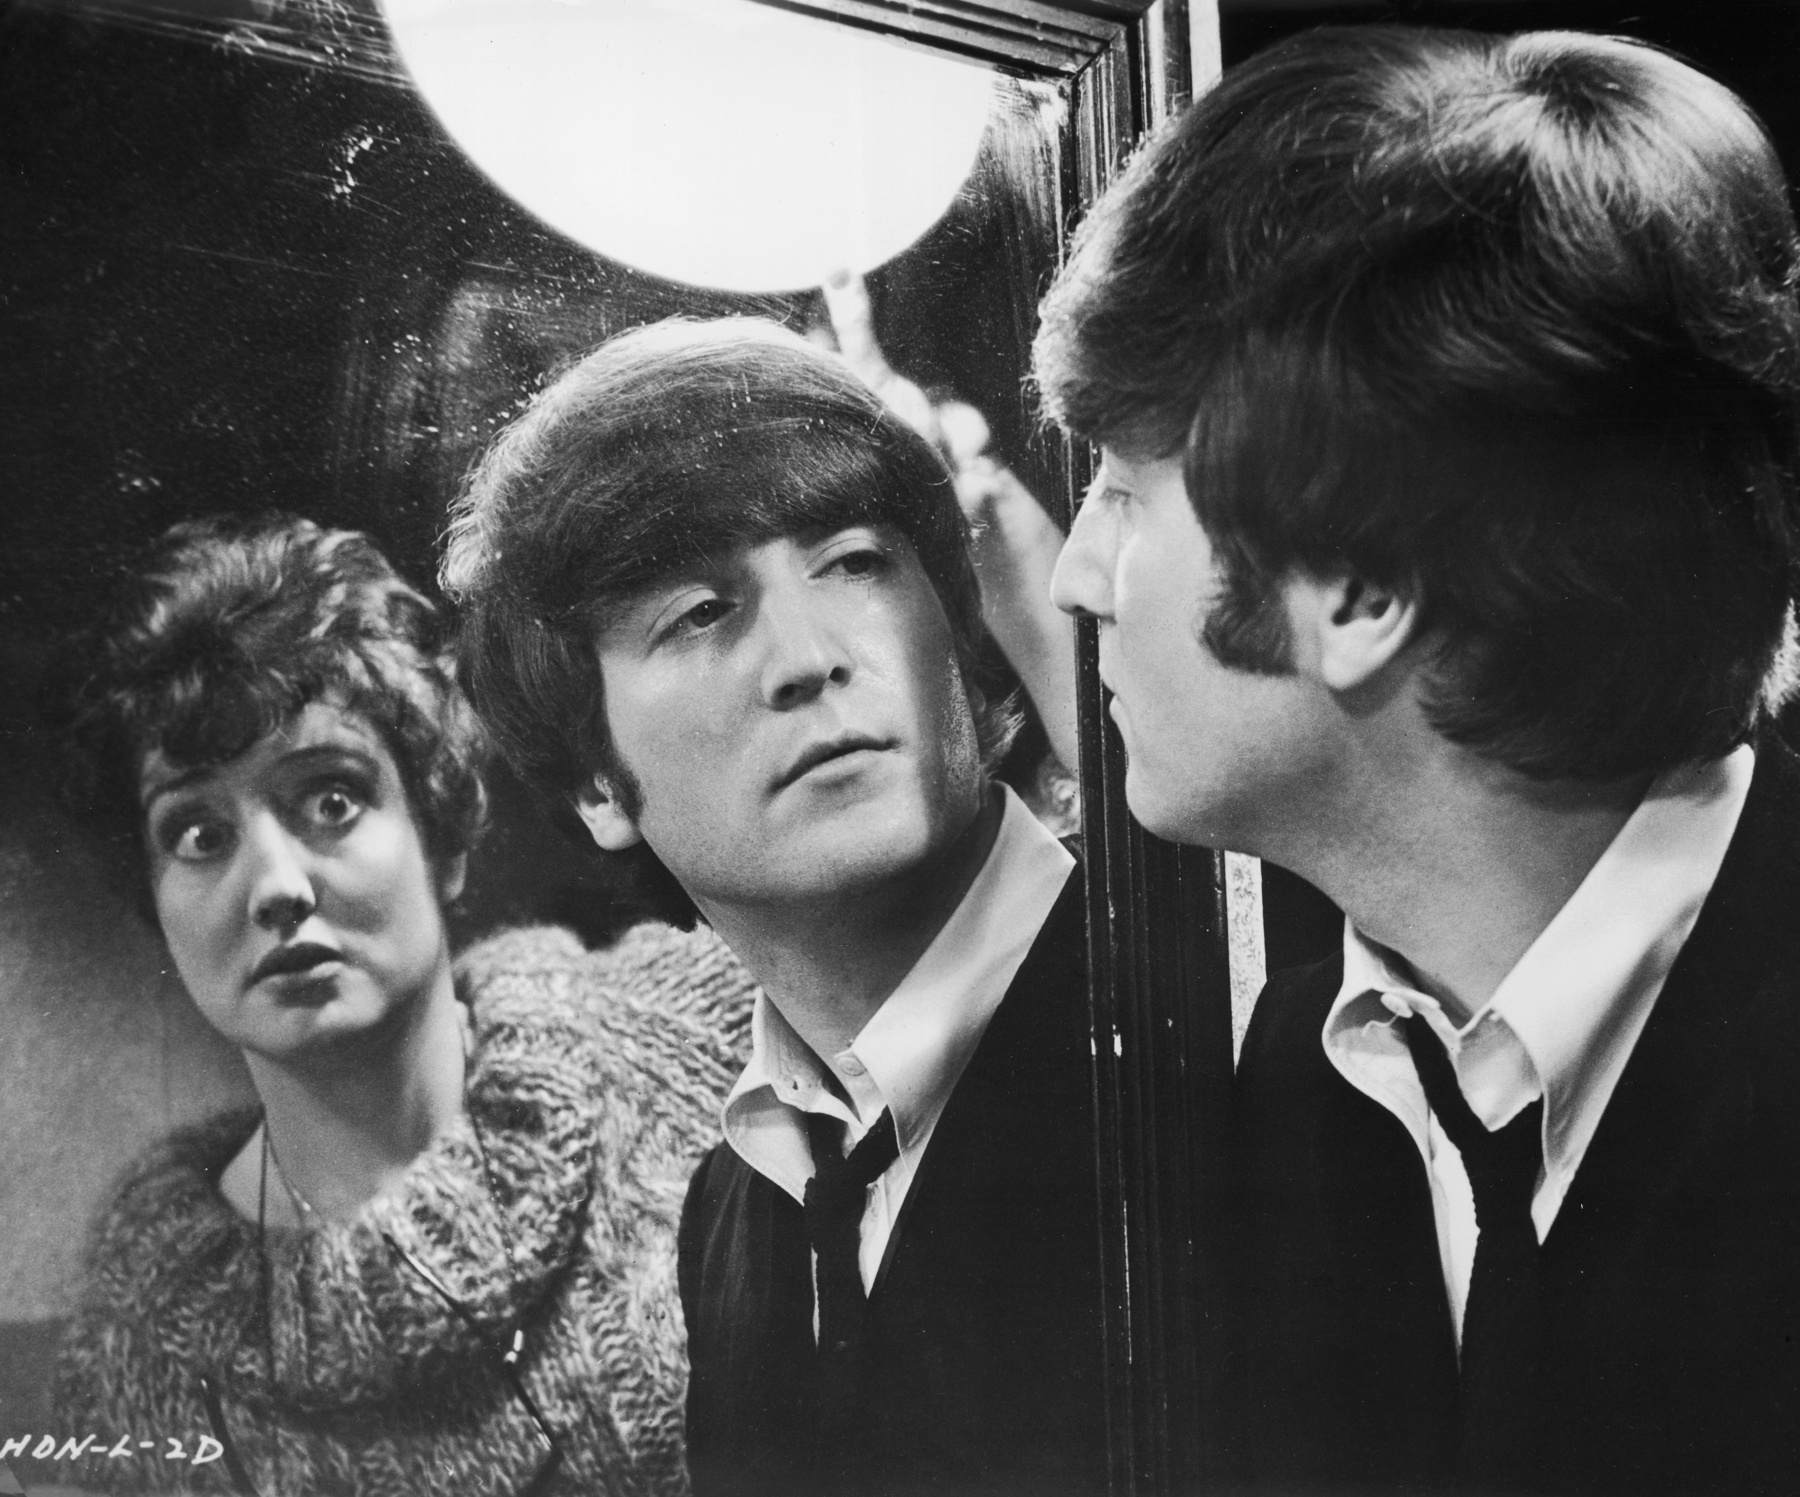 Lennon halálhíre Amerikát is megrázta. Ez a kép például a tengerentúli Beatles-rajongókat örökíti meg egy a Central Parkban tartott megemlékezés alatt.